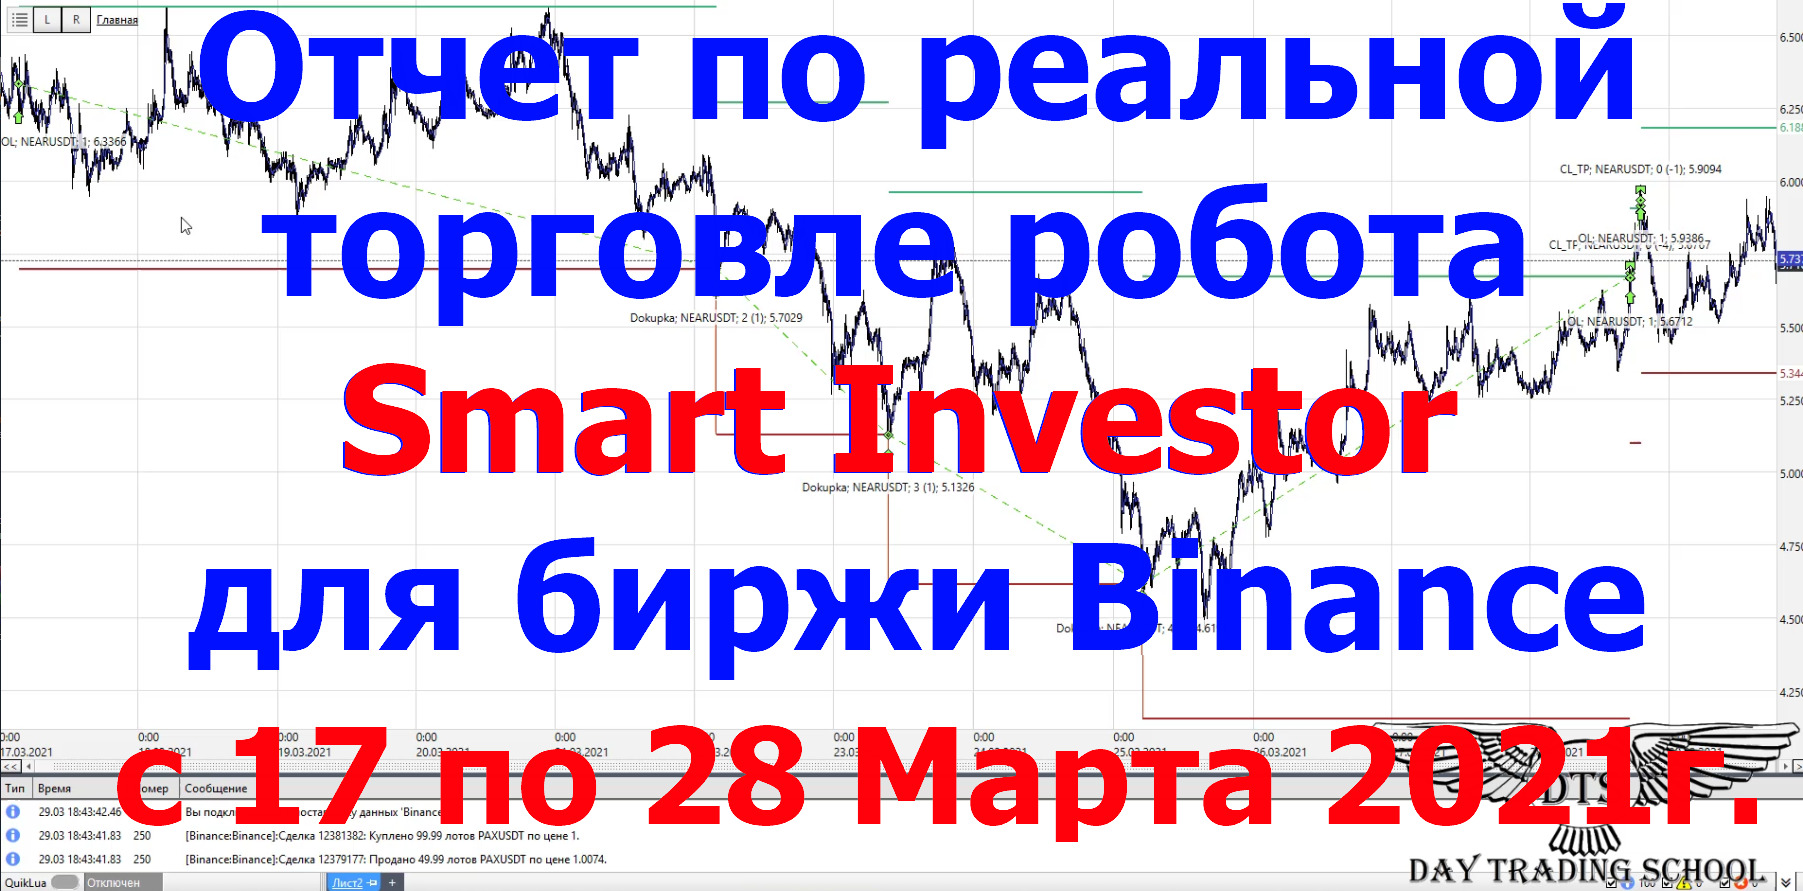 Отчет-по-роботу-Smart-Investor-с-17-по-28-Марта-2021г